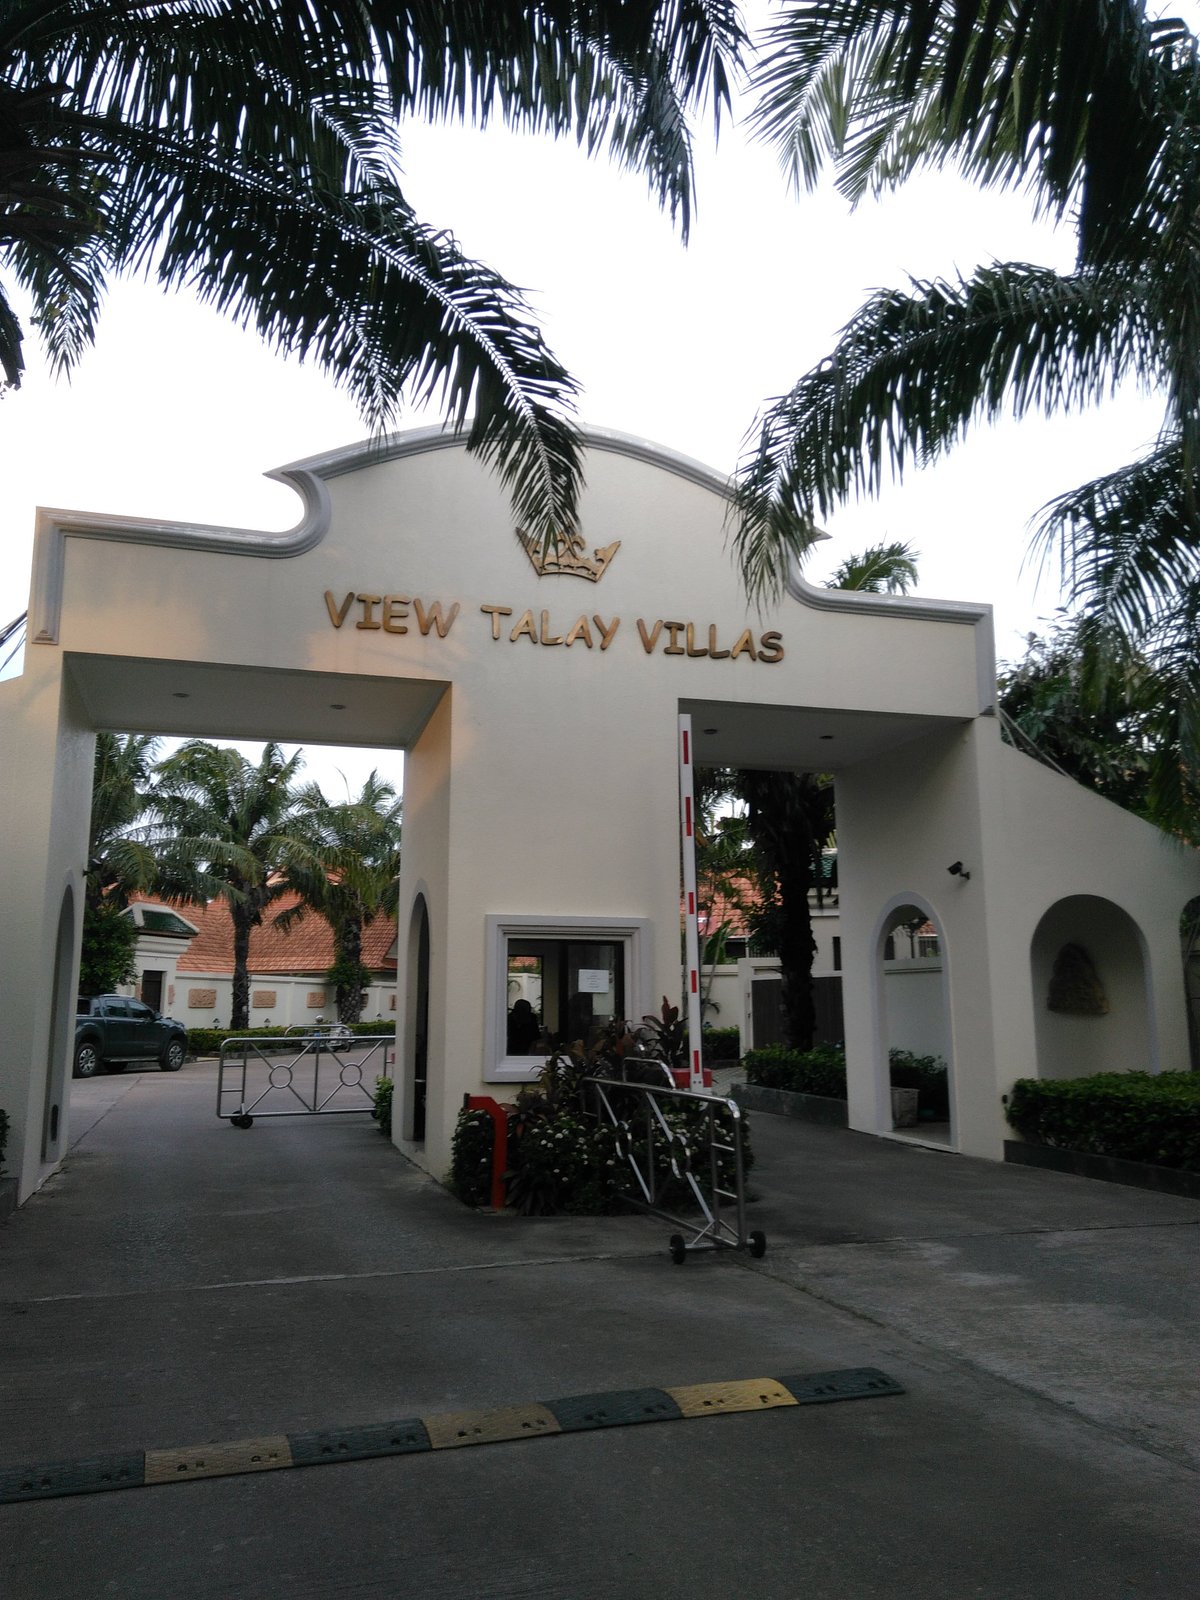 View Talay Villas Holiday Resort sign